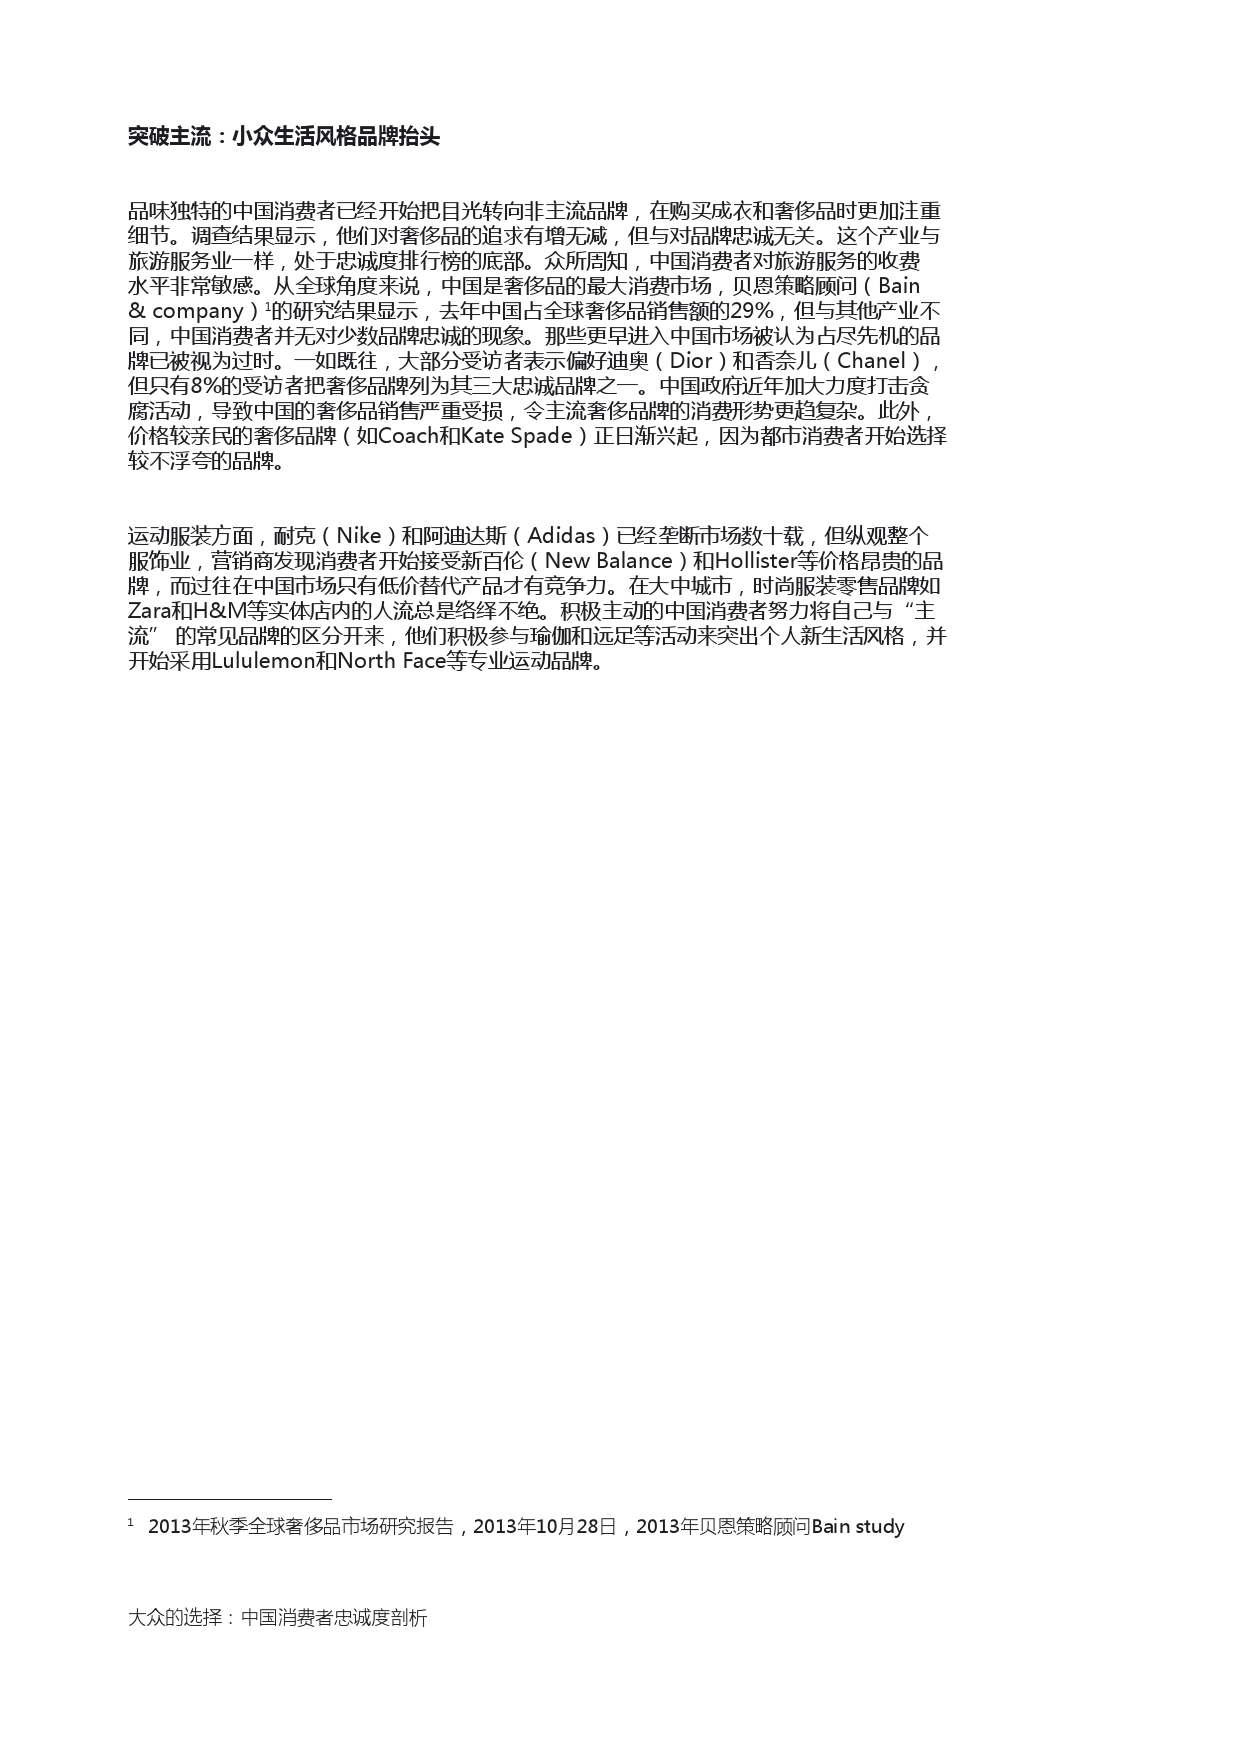 Epsilon_China_Loyalty_Study_report_CN_000010